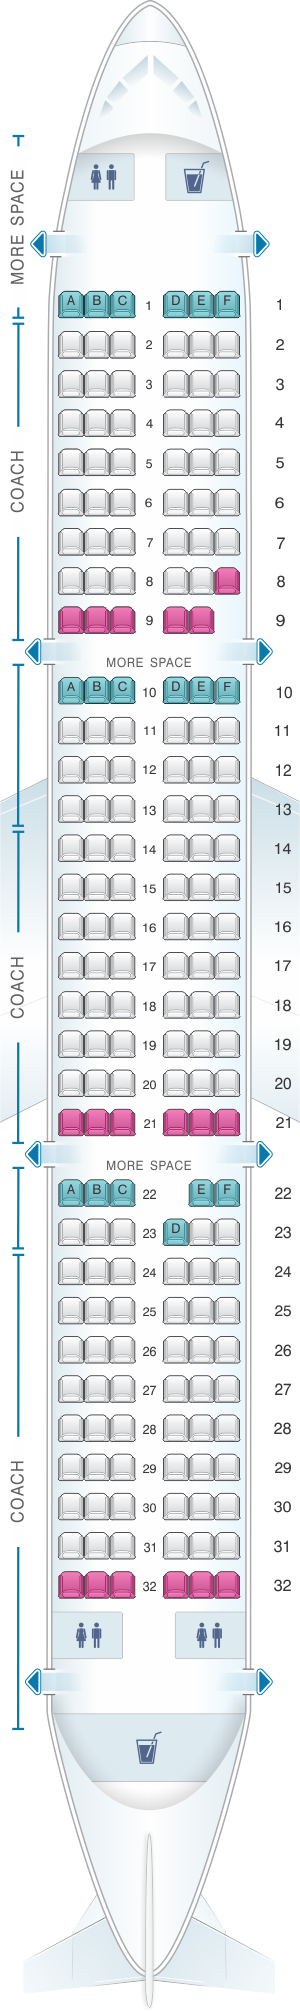 Seat Map JetBlue Airways Airbus A321 Config 1 | SeatMaestro